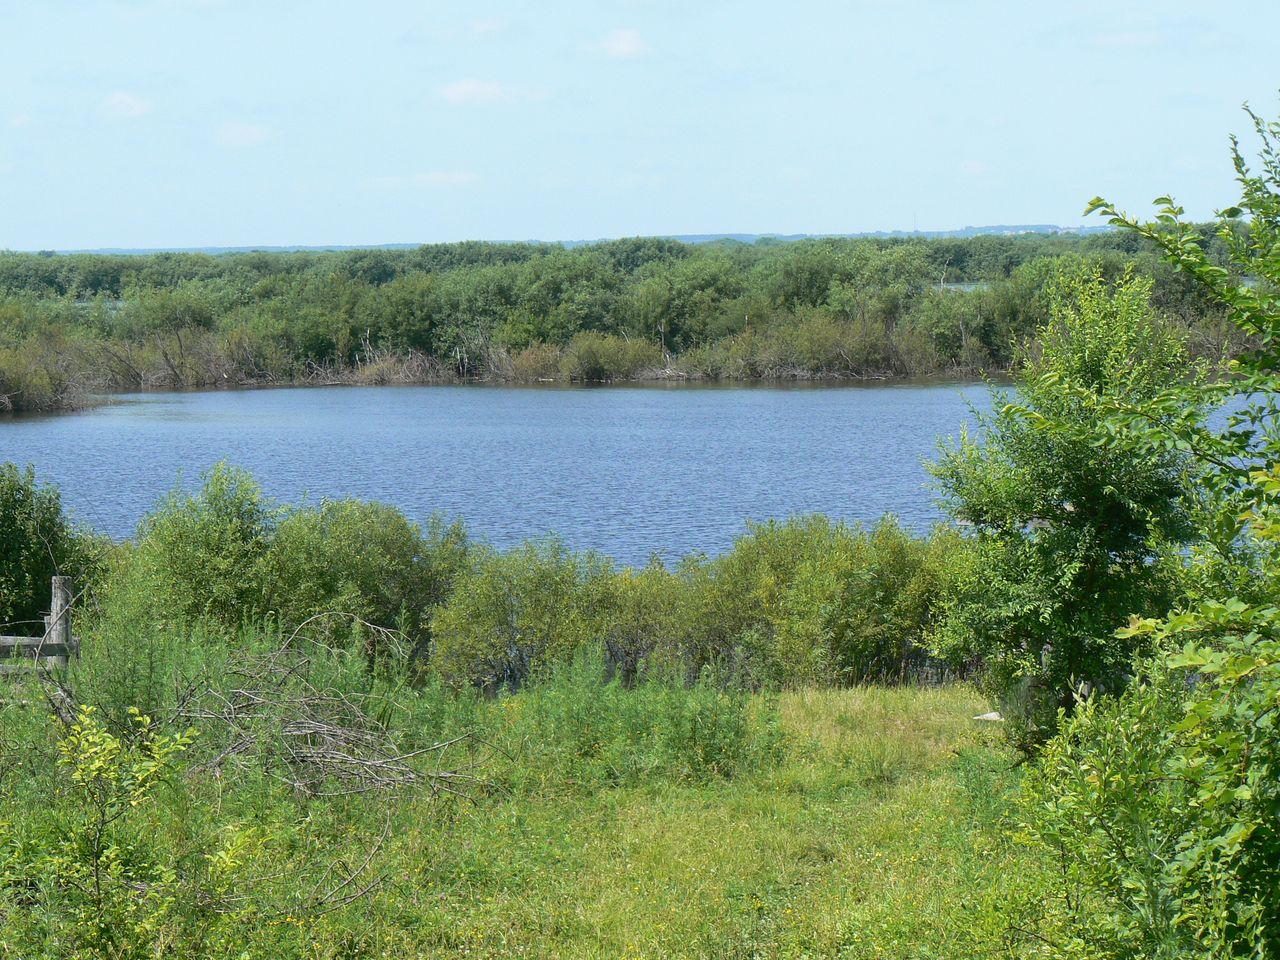 Невельское, image of landscape/habitat.